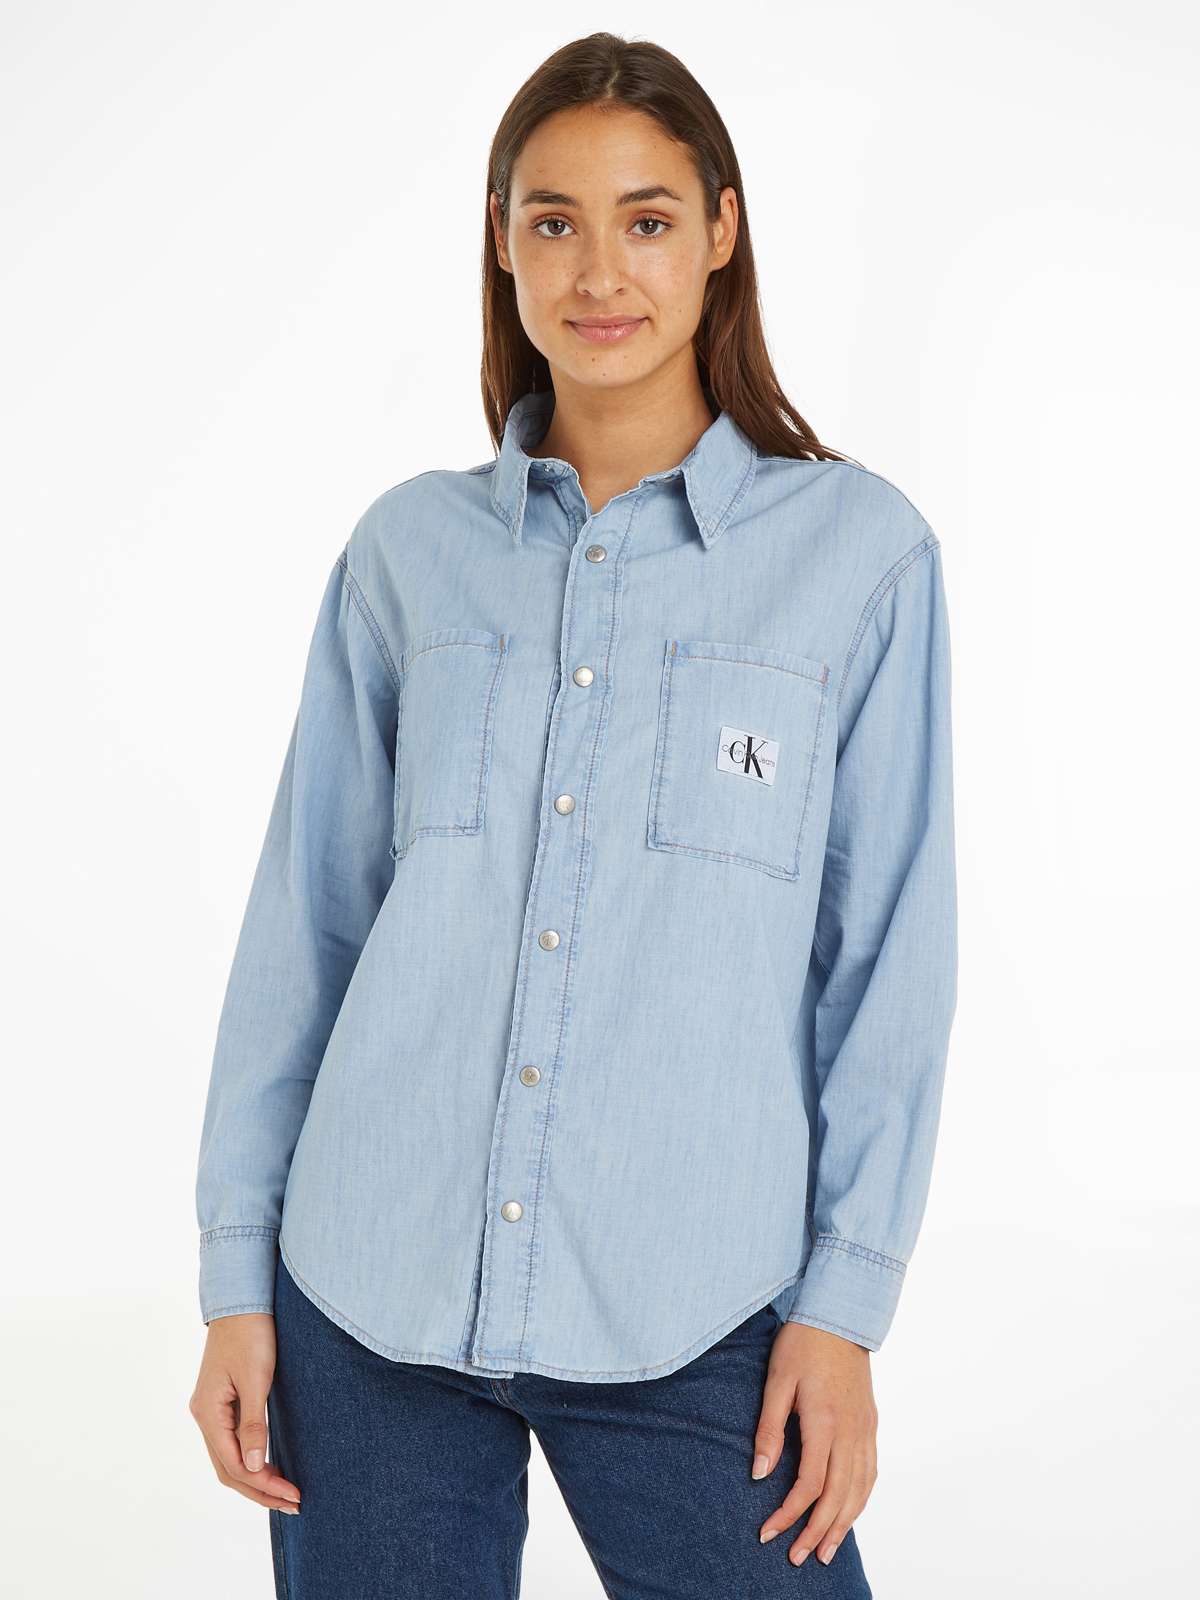 Джинсовая блузка с нашивкой-логотипом